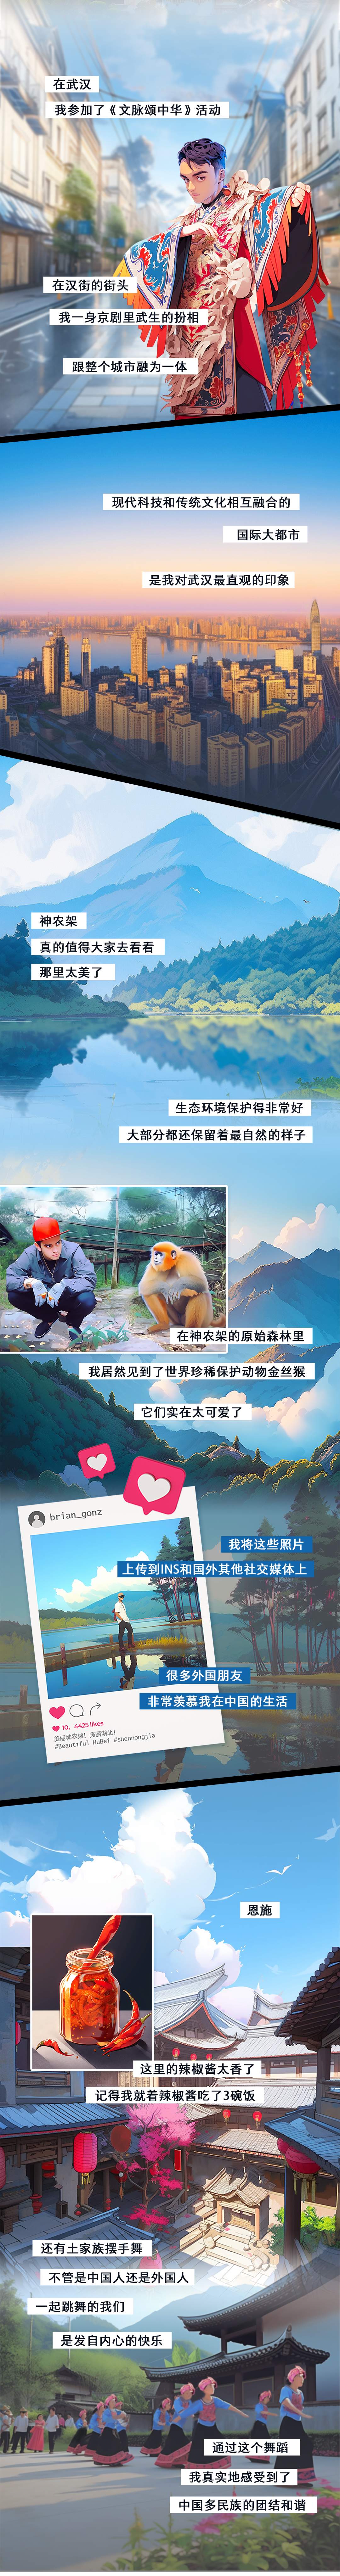 中国共产党的故事丨六个“荆”彩故事，见证百年大党力量